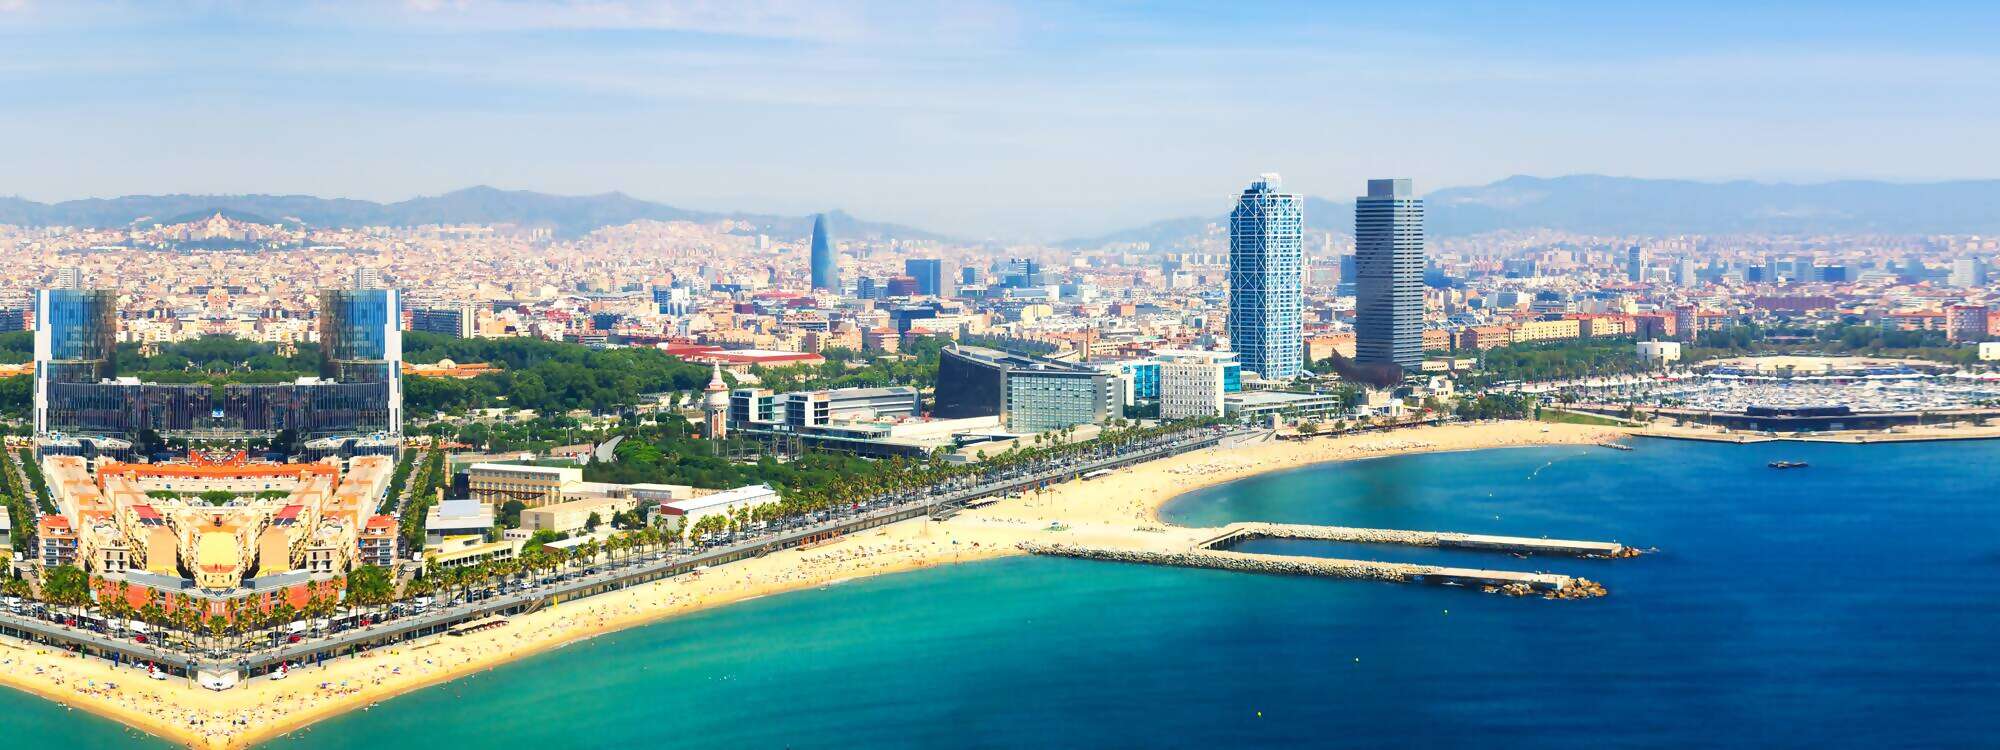 Luftaufnahme von Barcelona am Mittelmeer